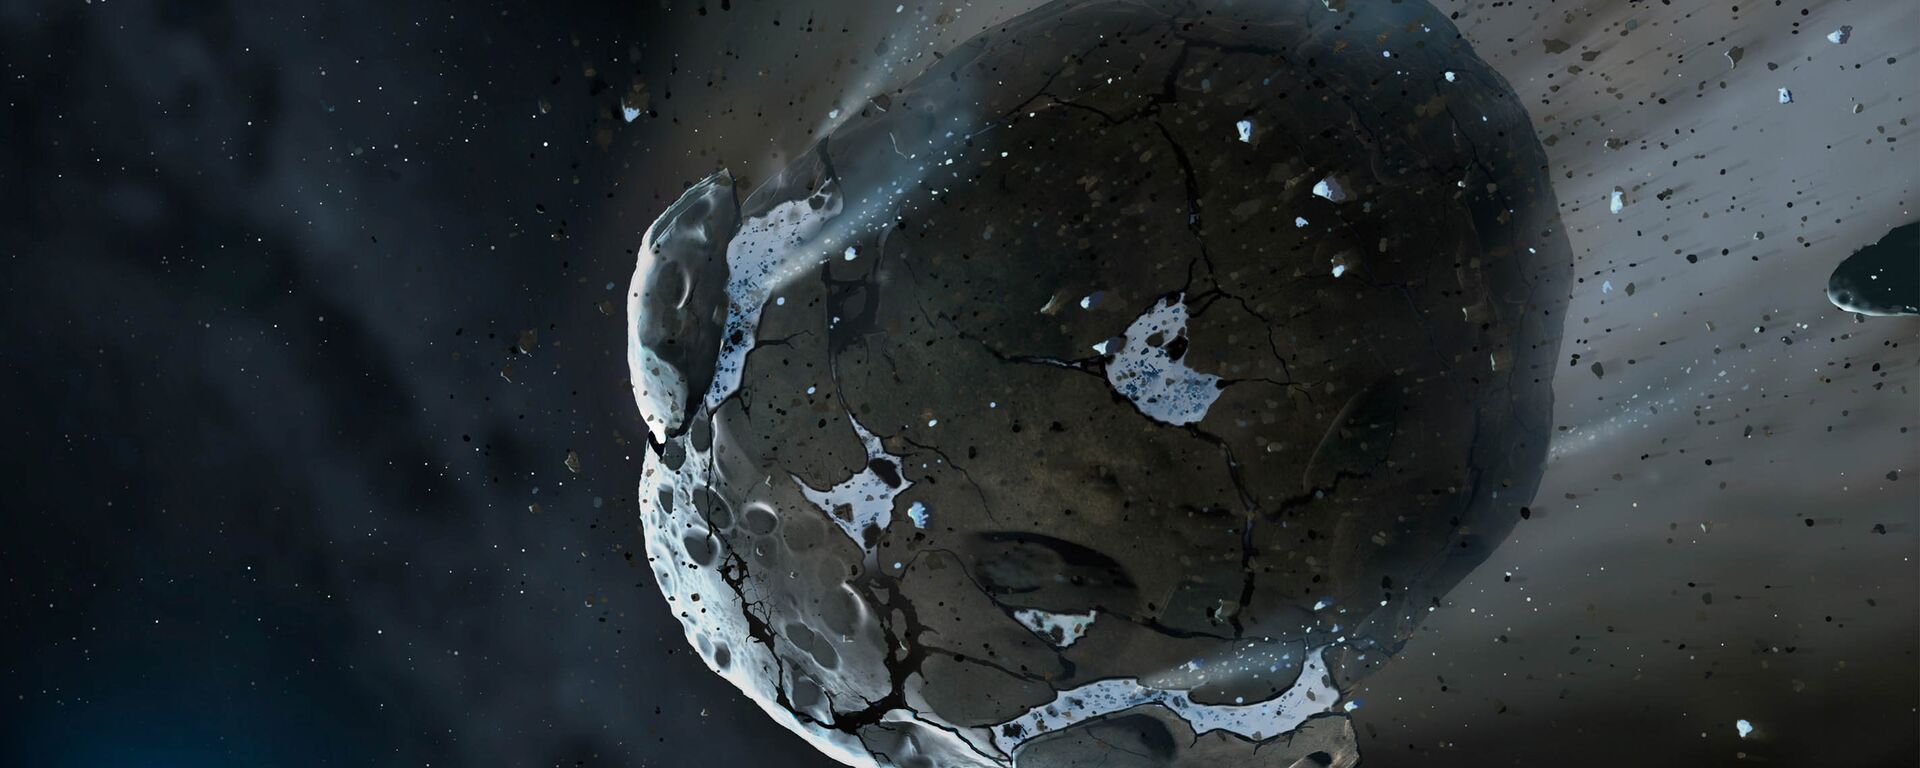 Астероид, архивное фото - Sputnik Армения, 1920, 22.02.2021